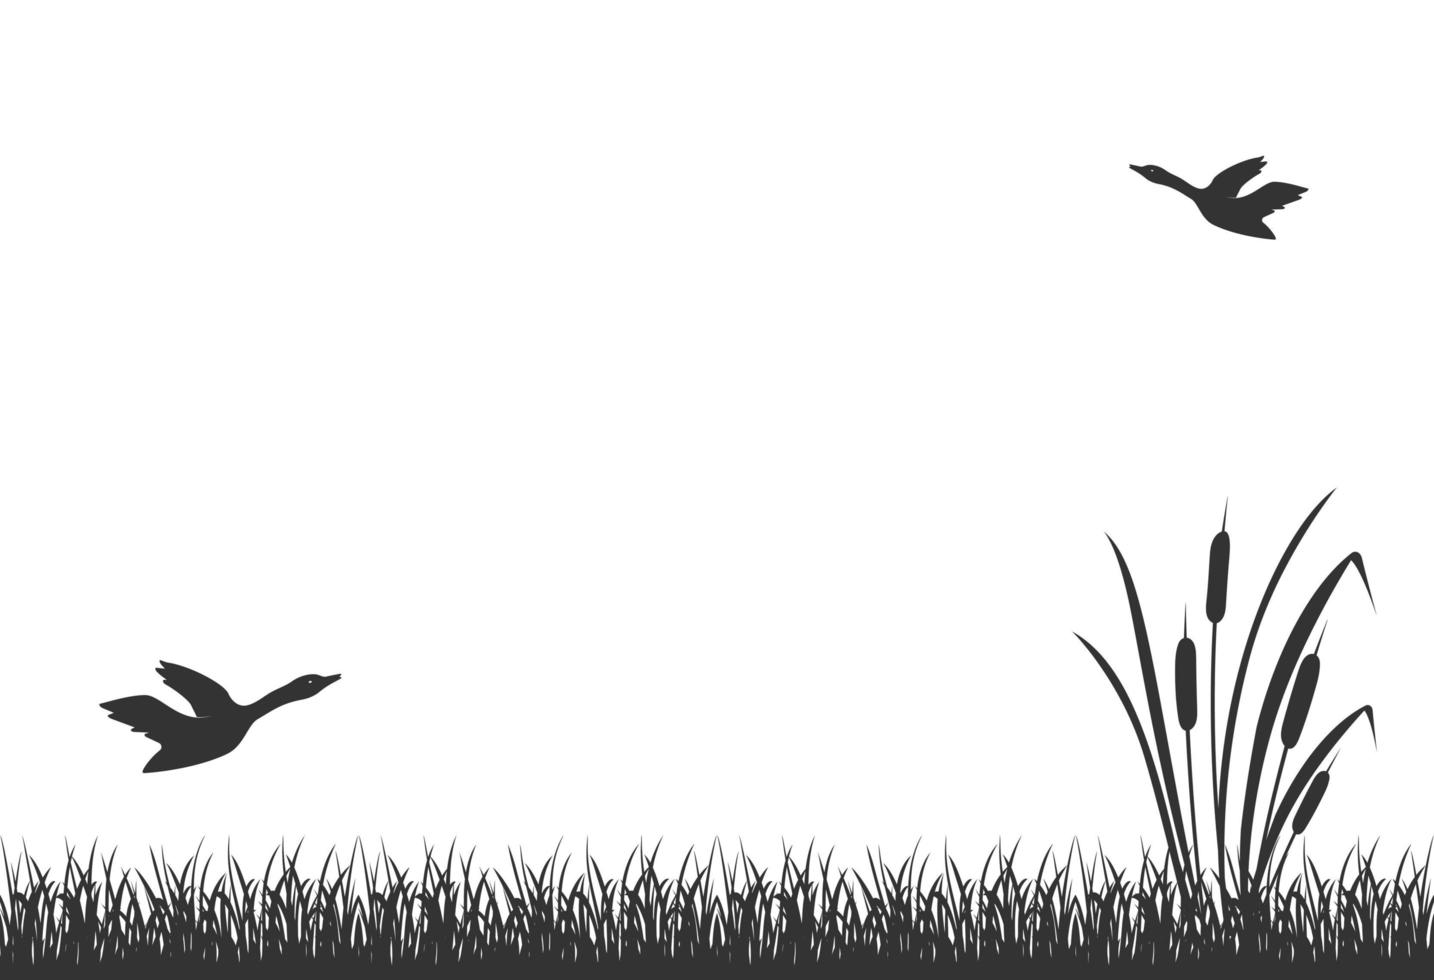 silueta negra de hierba pantanosa con juncos y patos voladores. caña del lago, fondo. vector